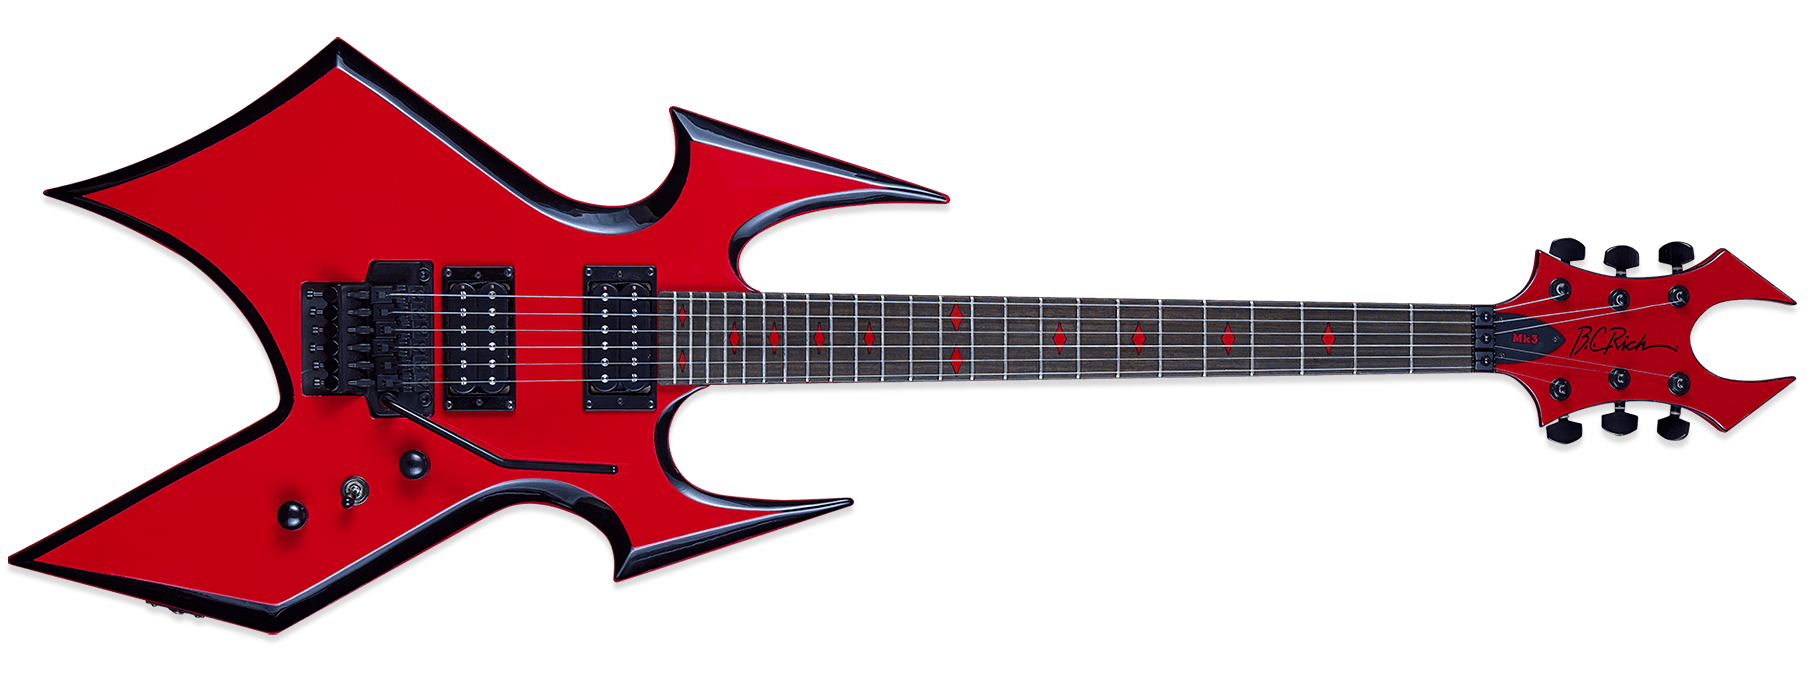 Gibson Metal Rock Guitar Transparent Images